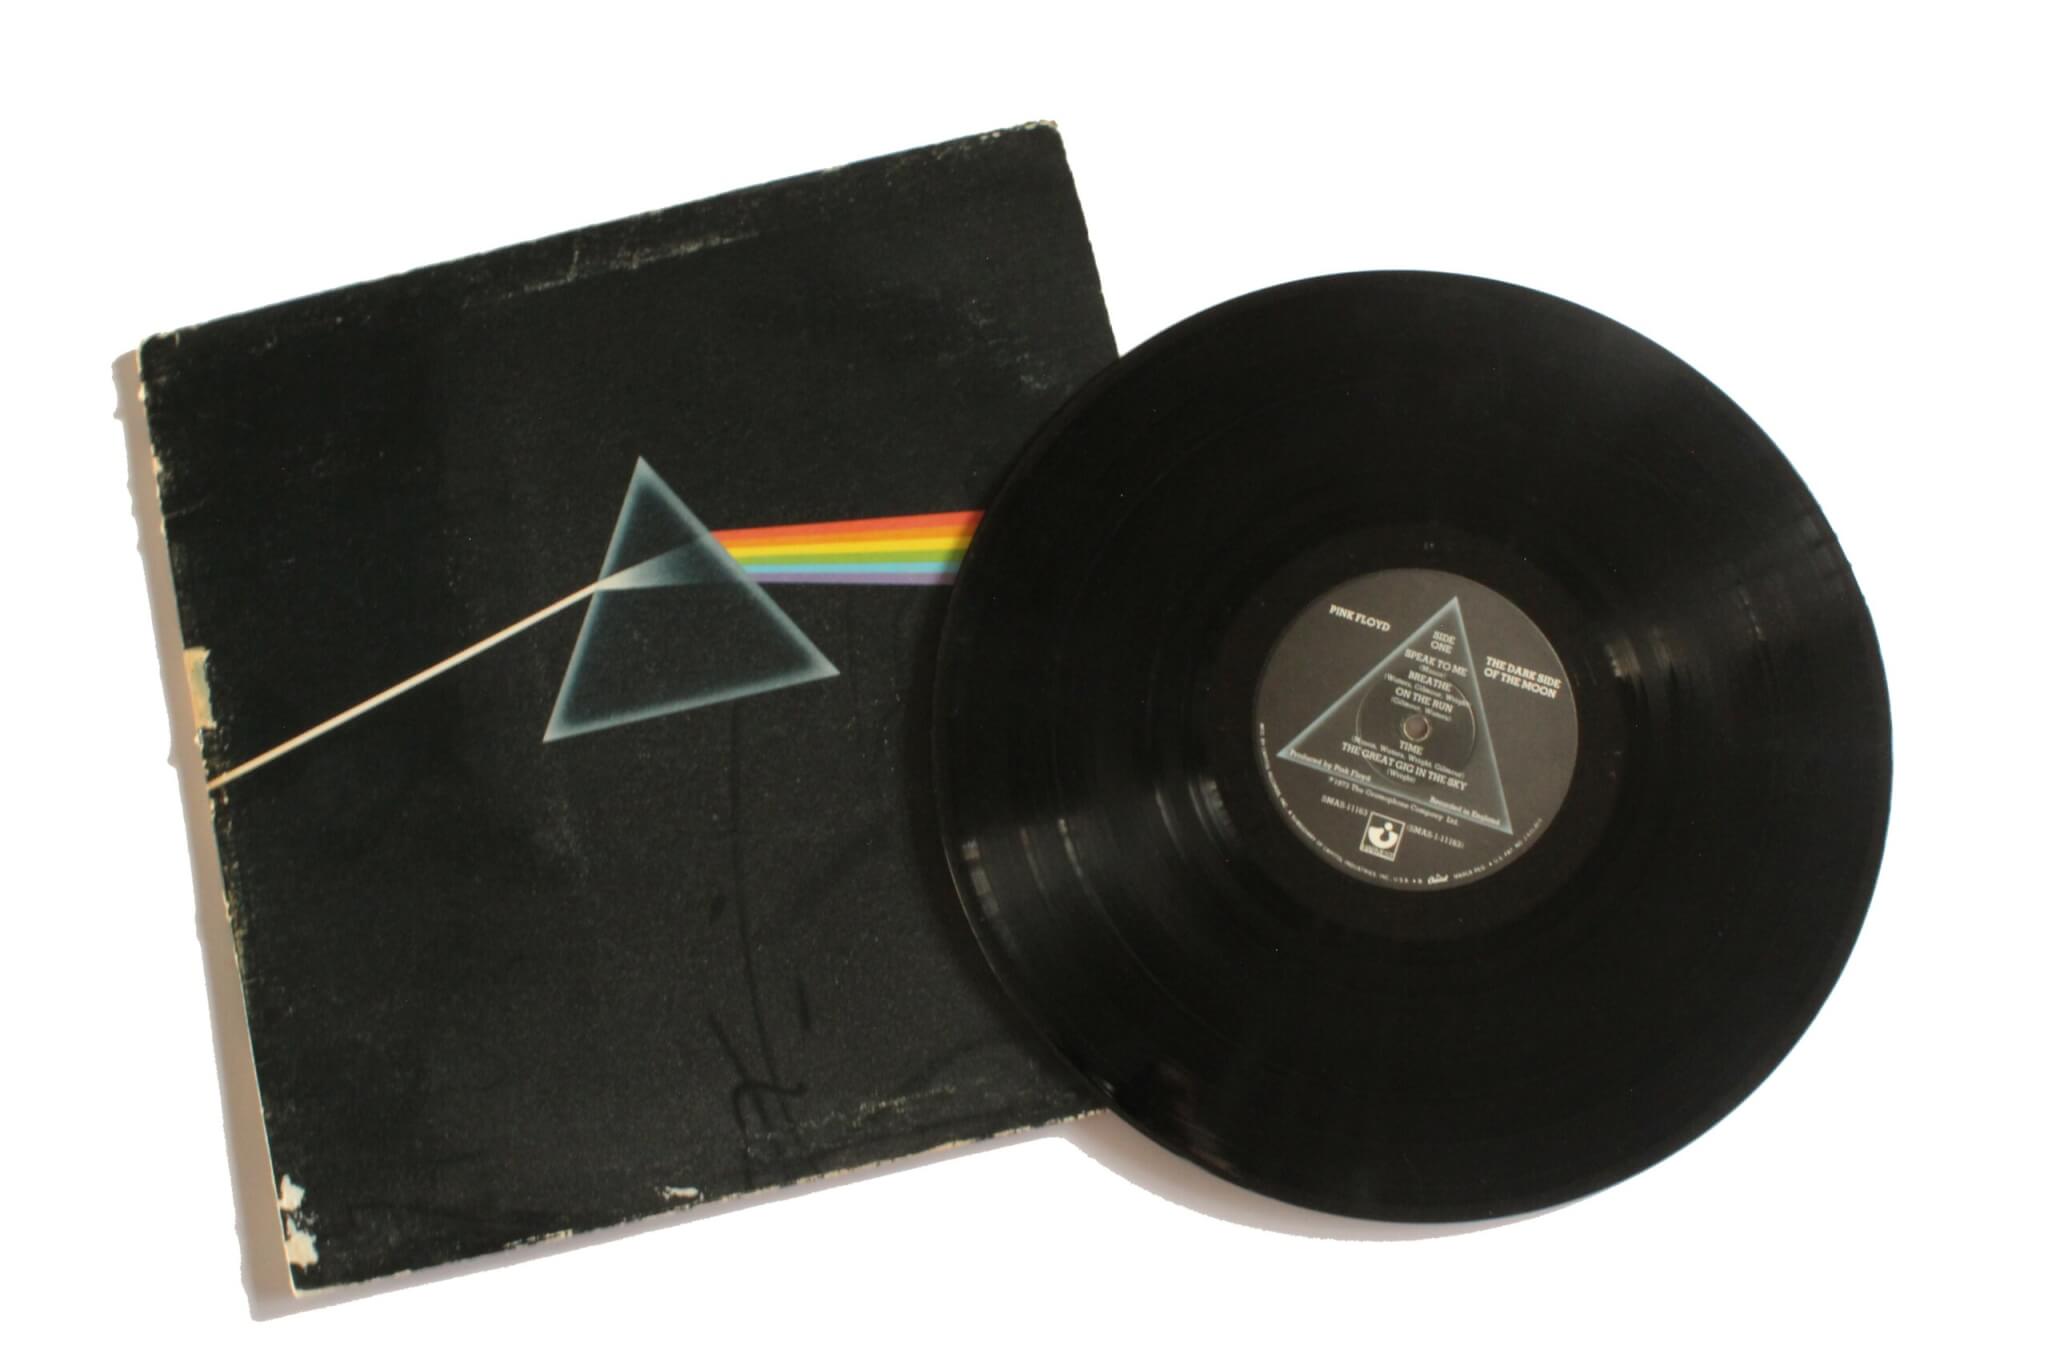 Pink Floyd Dark Side of the Moon album